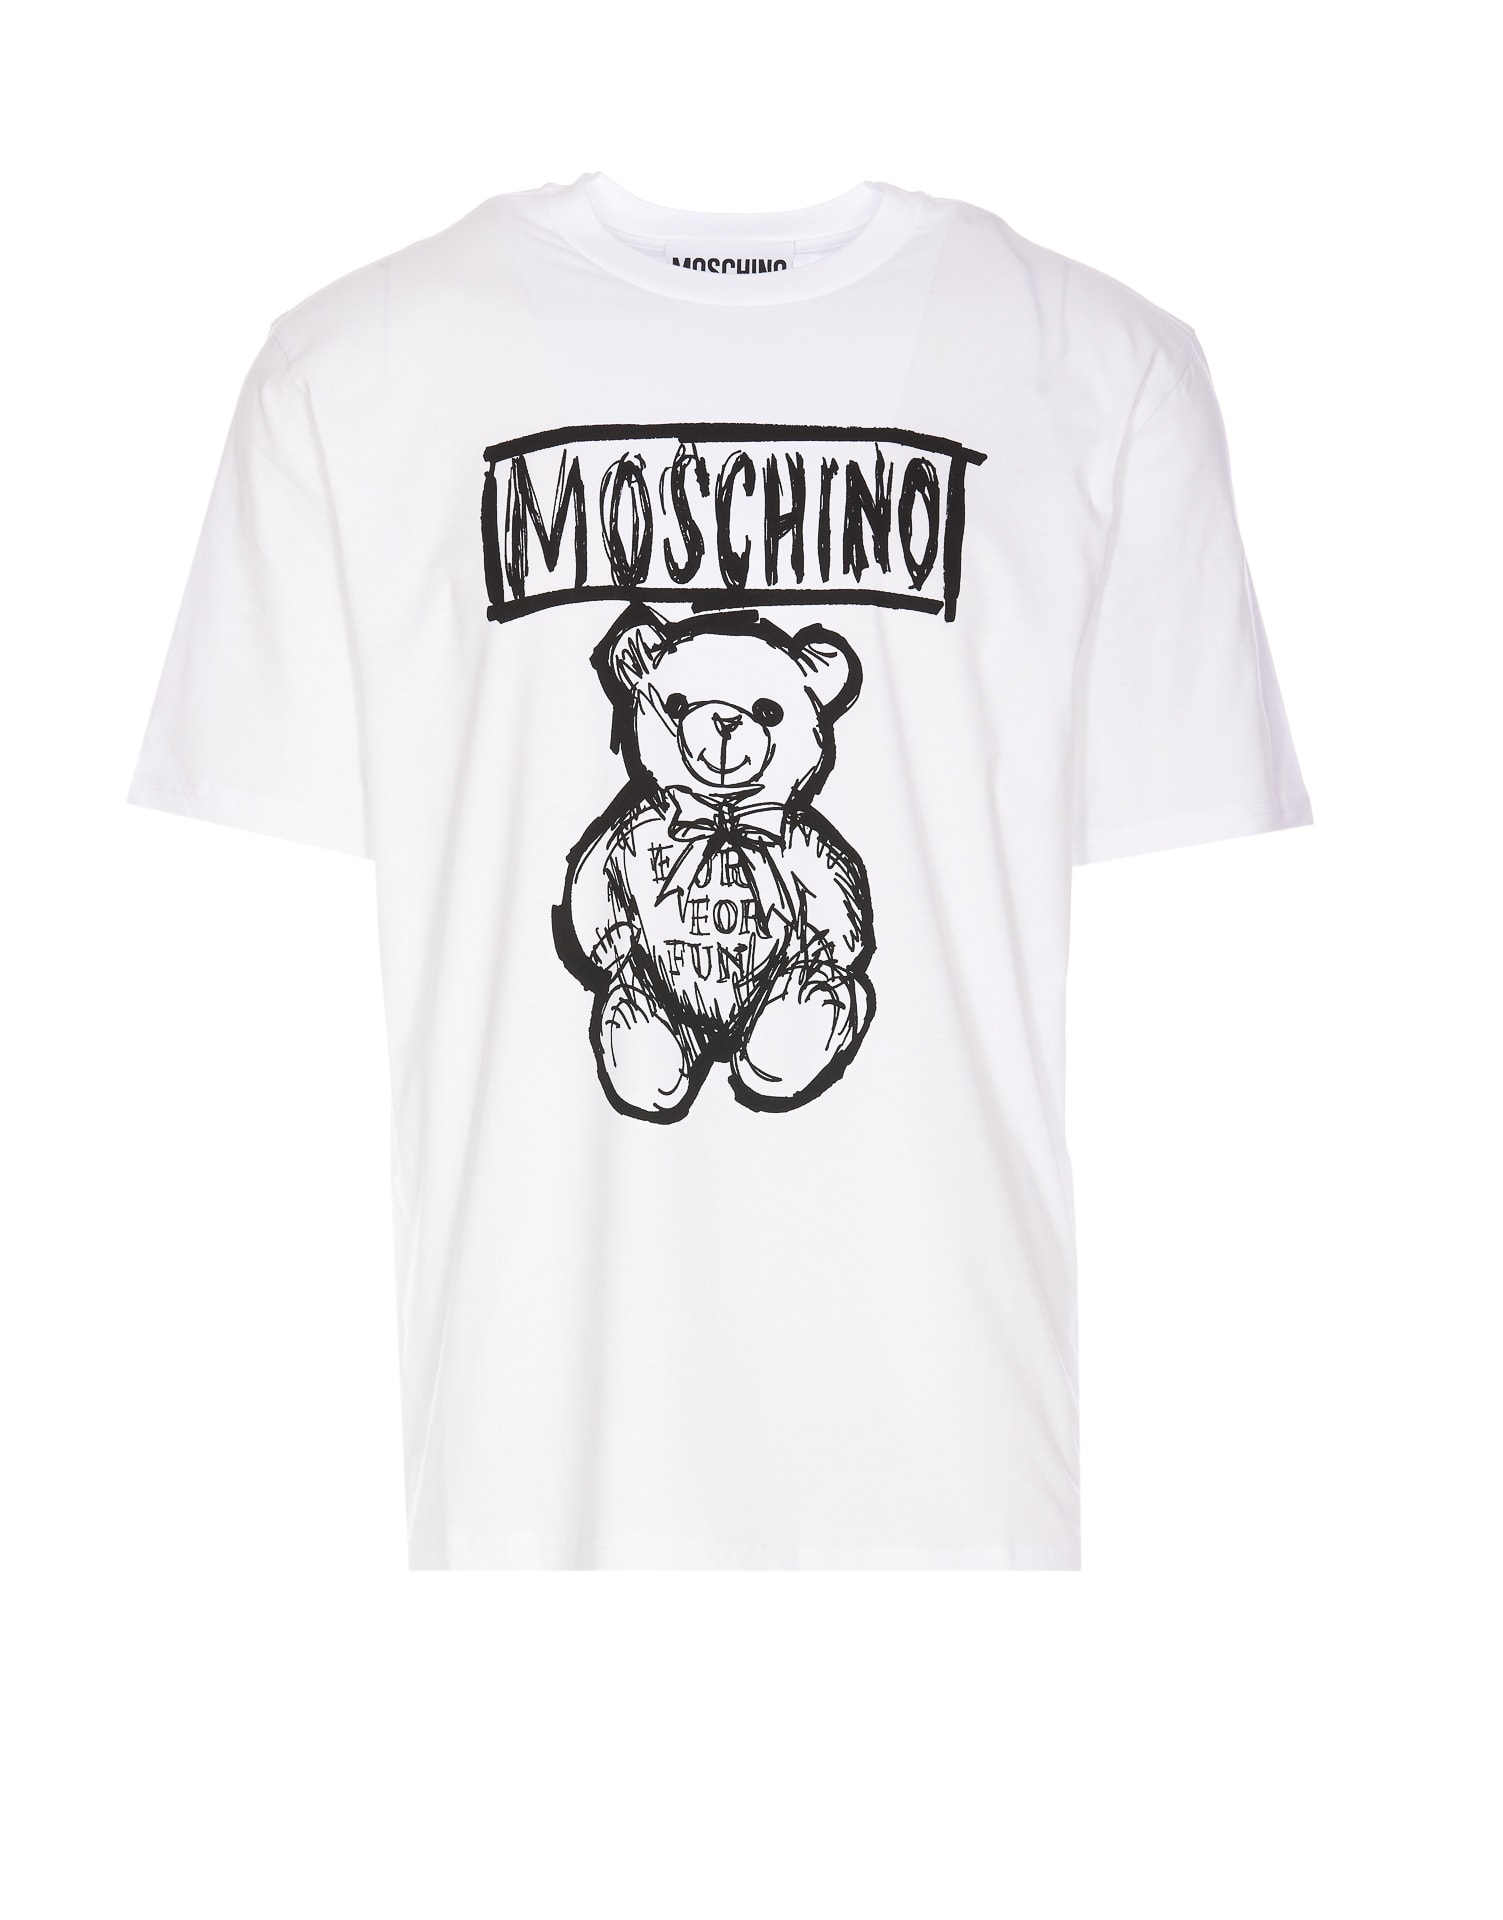 Drawn Teddy Bear T-shirt